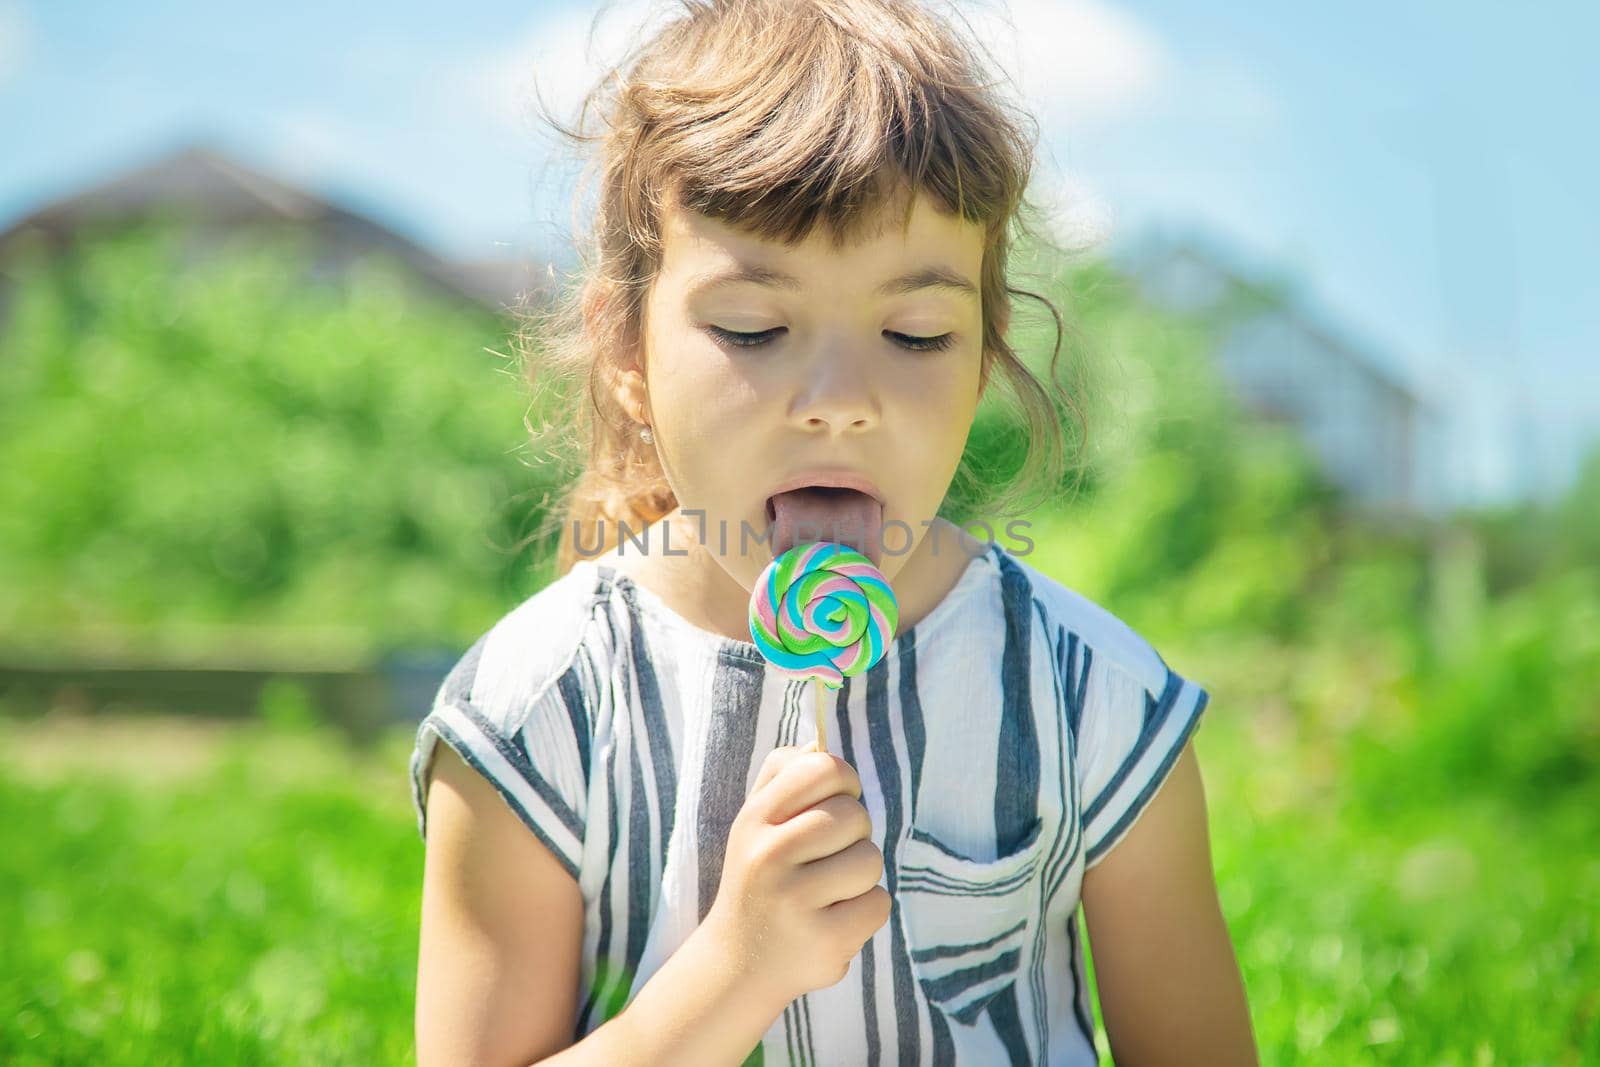 child eats lollipop on nature. Selective focus.